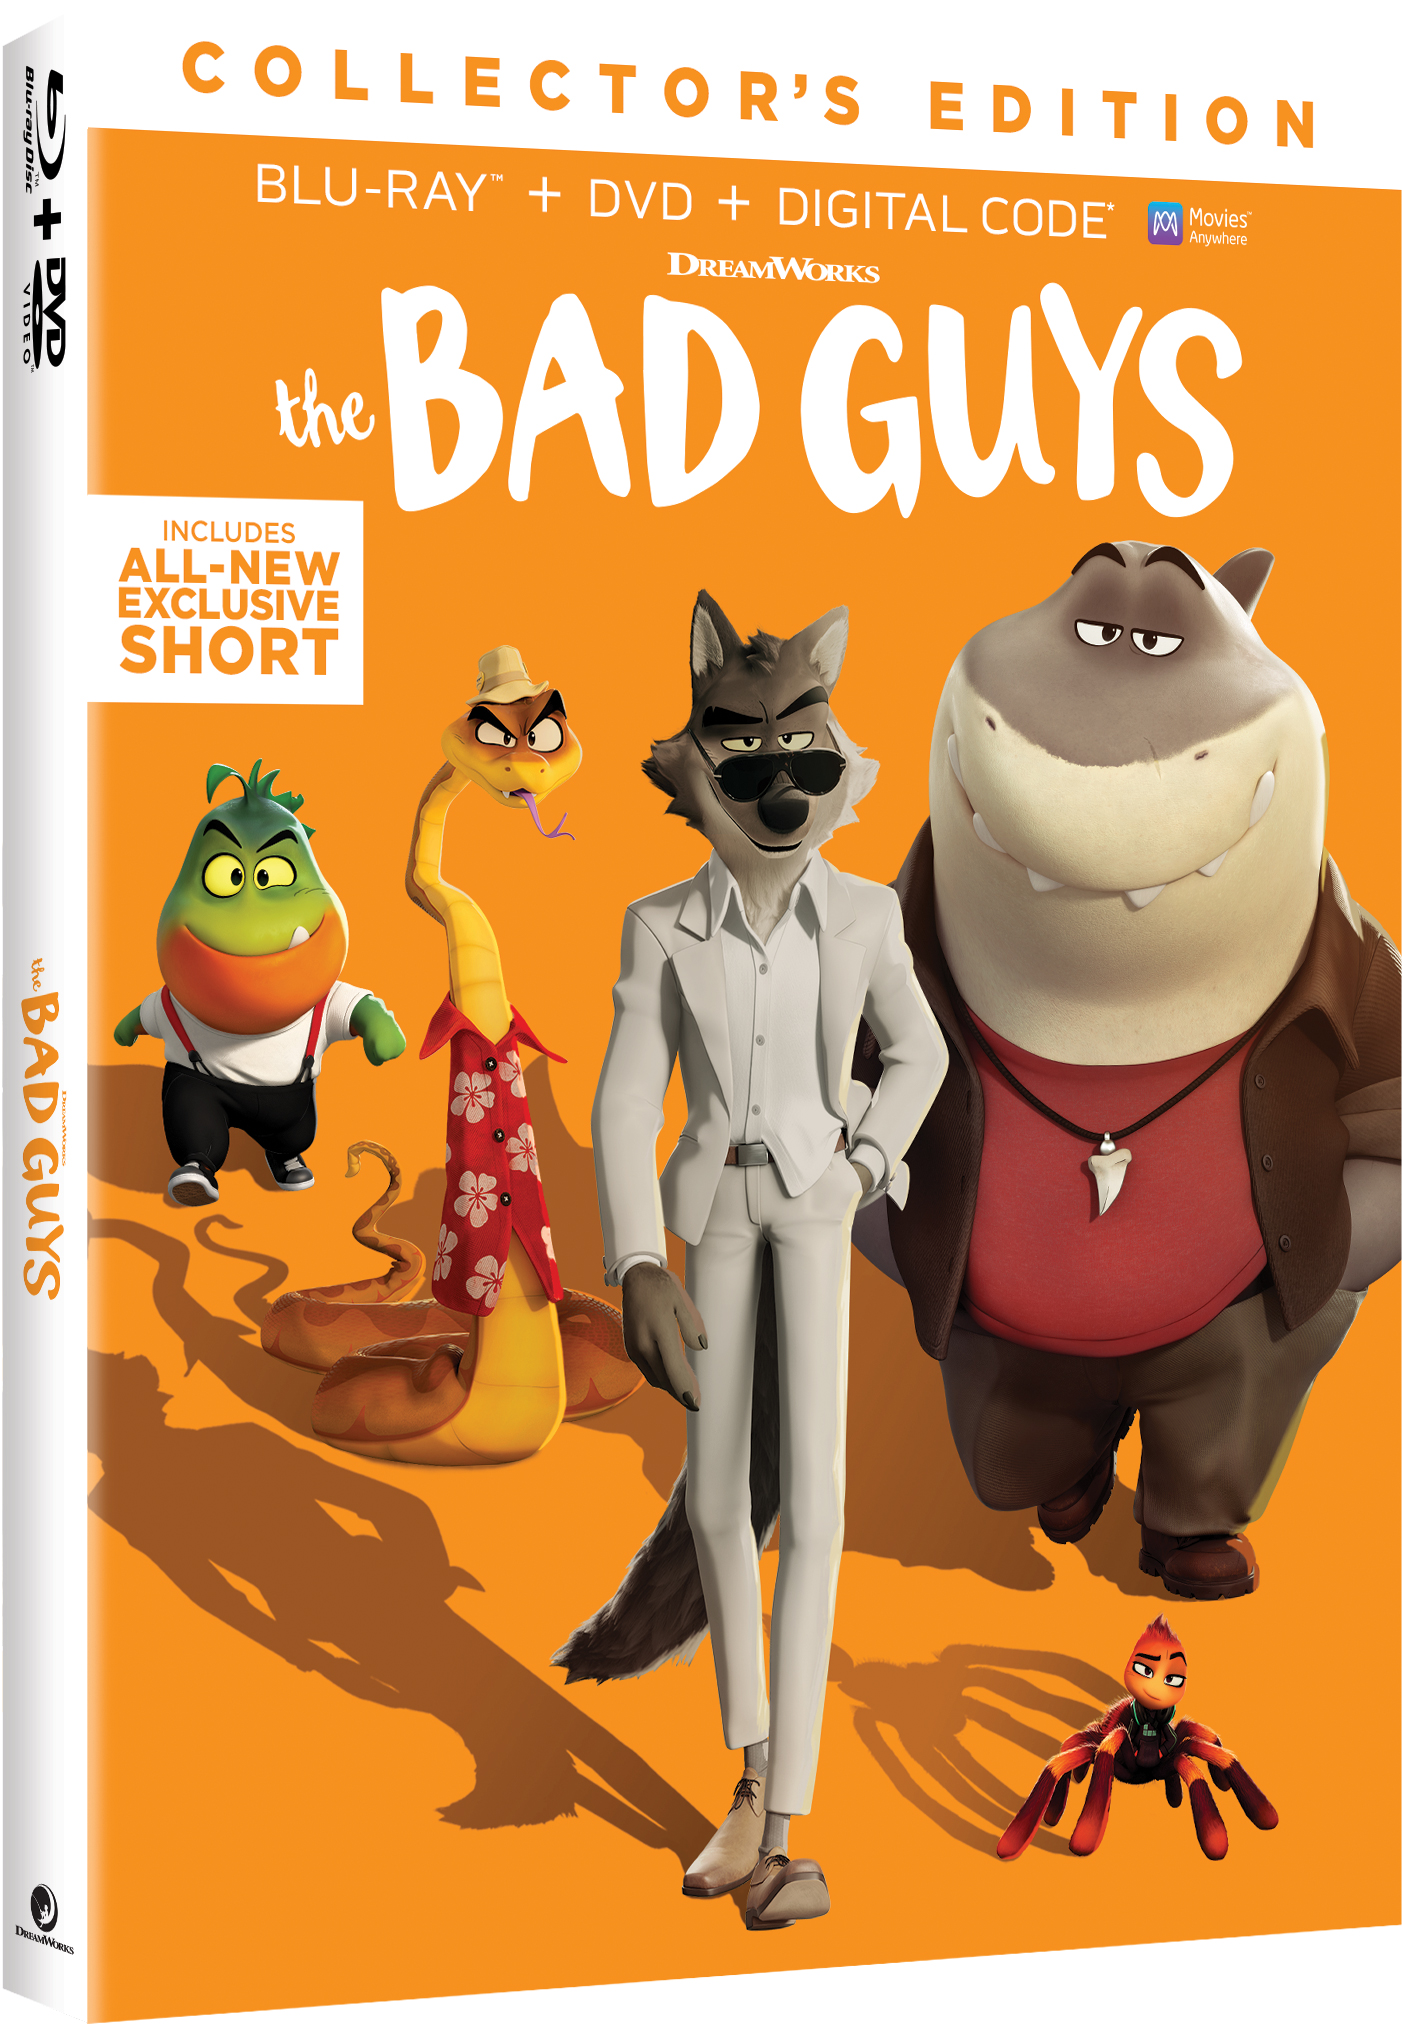 The bad guys bonus features